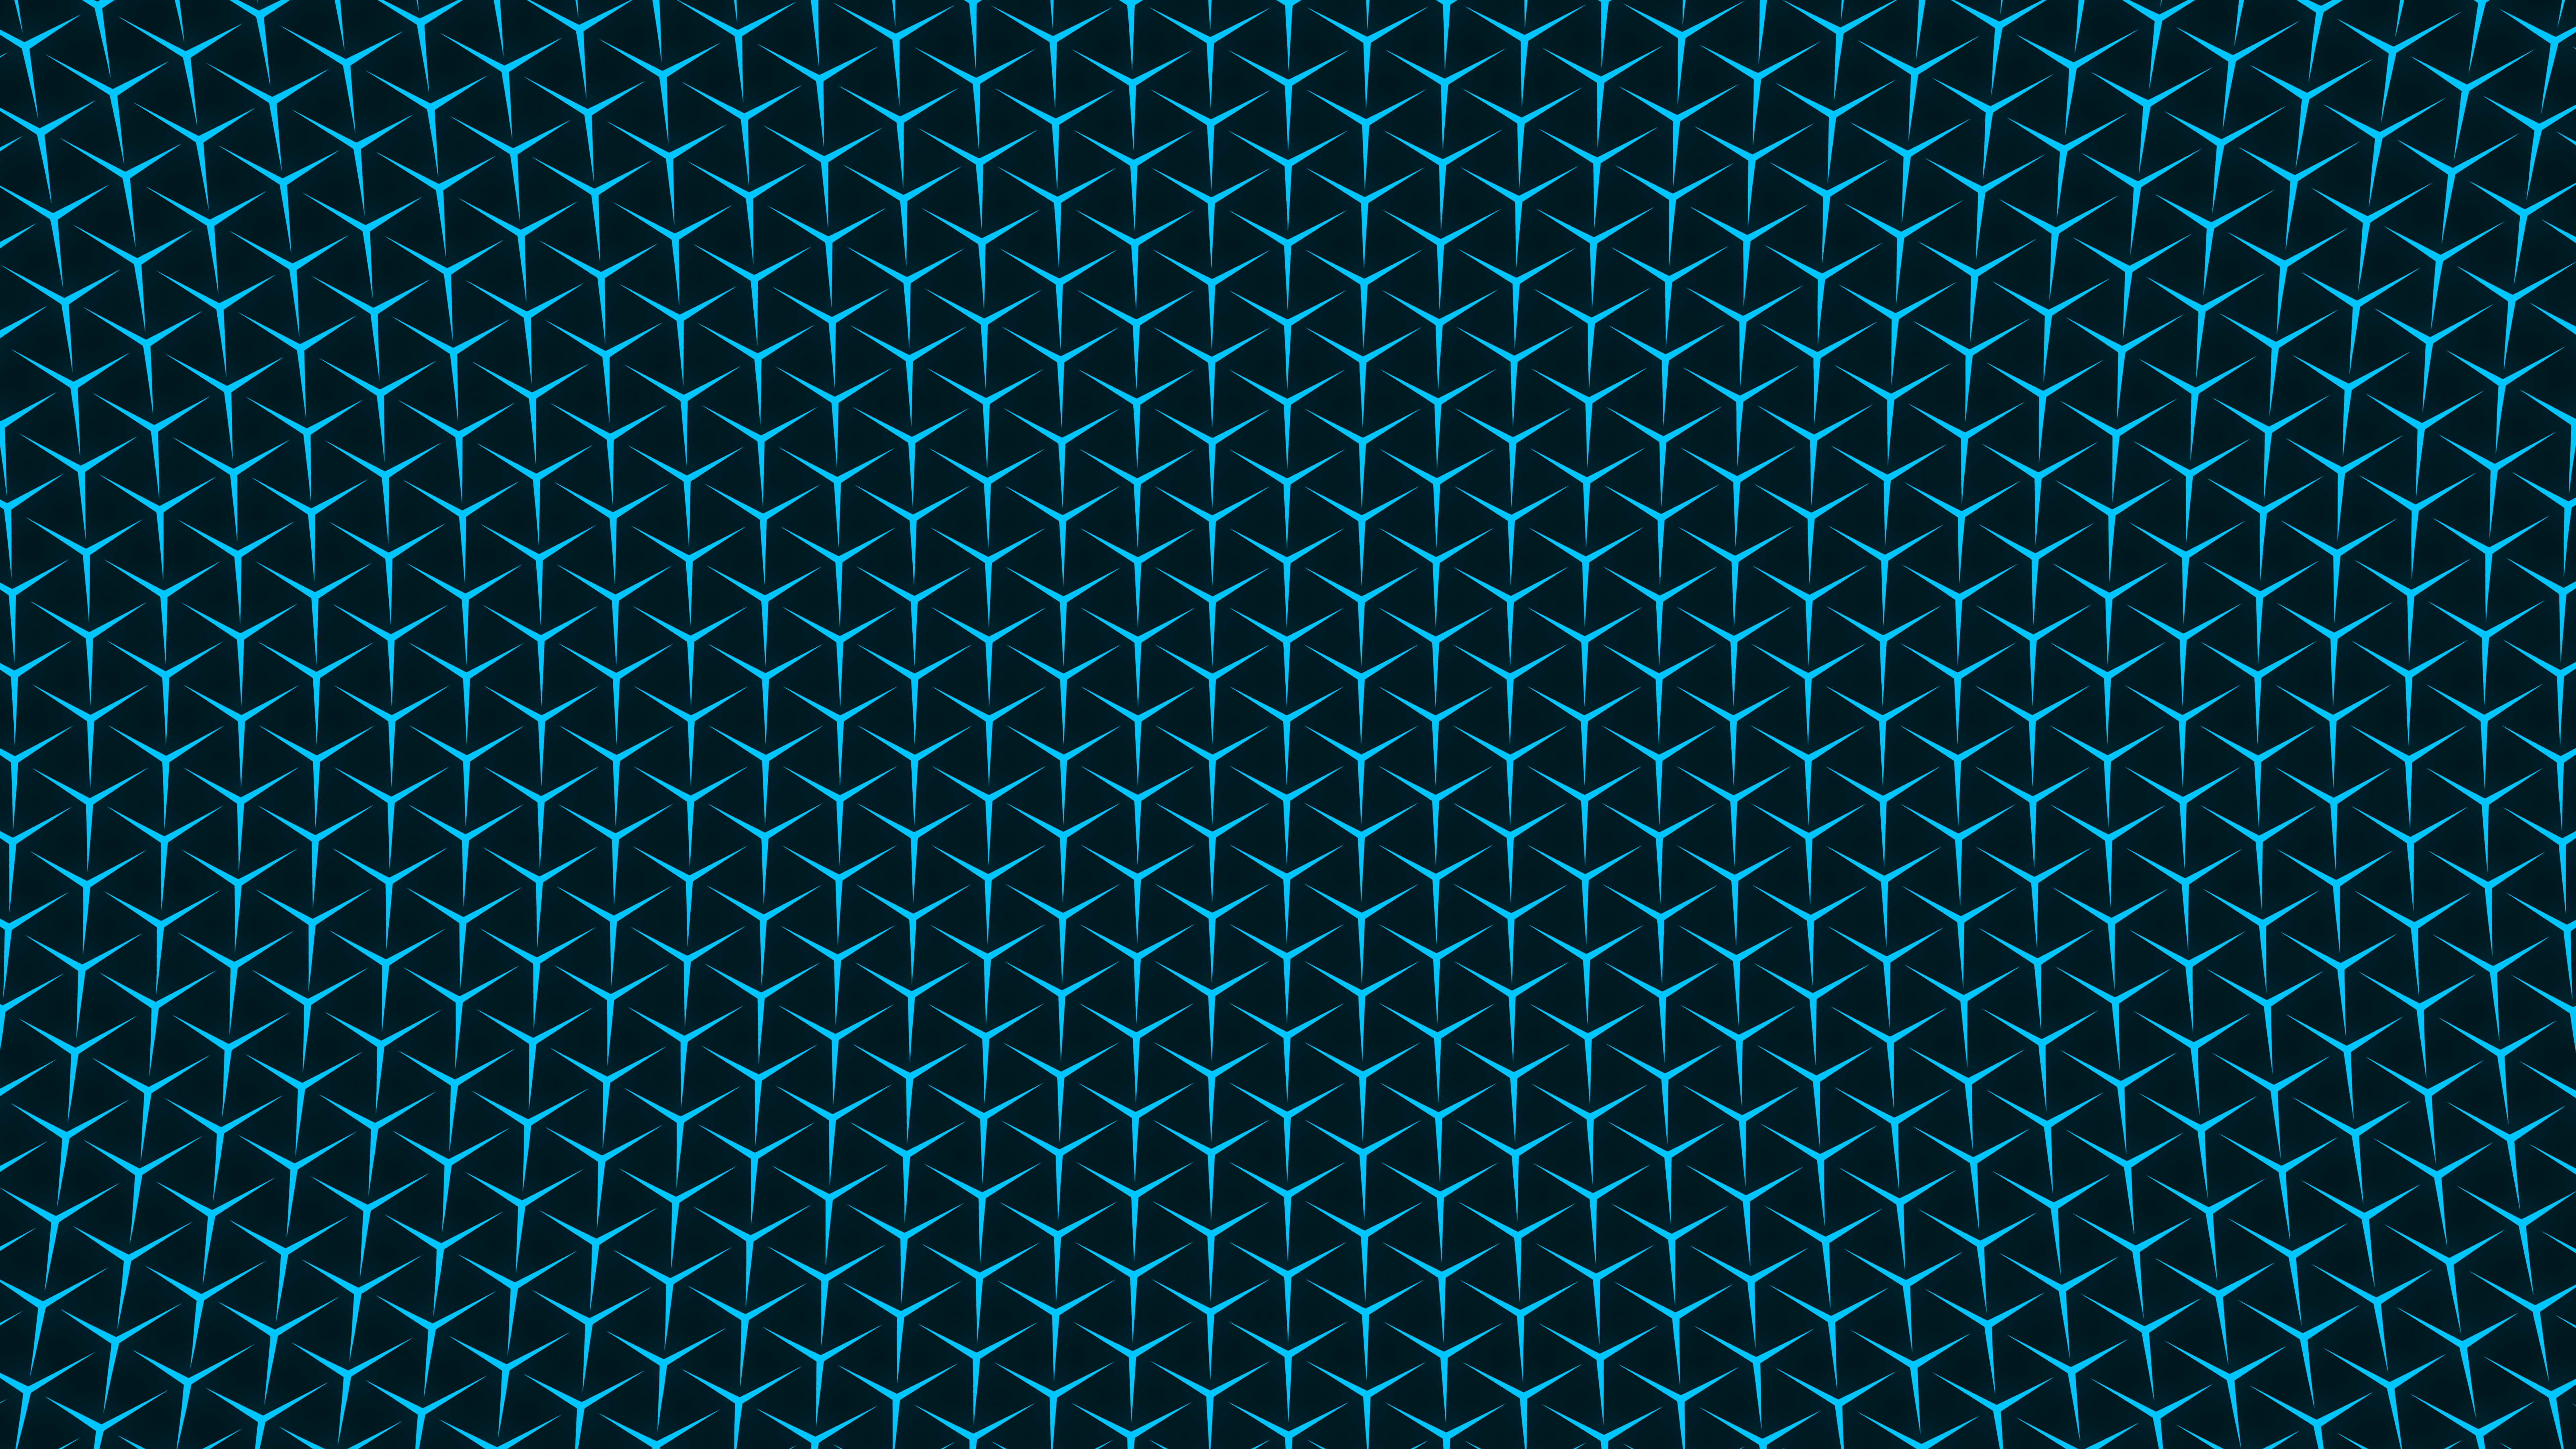 Pattern Aqua 7680x4320